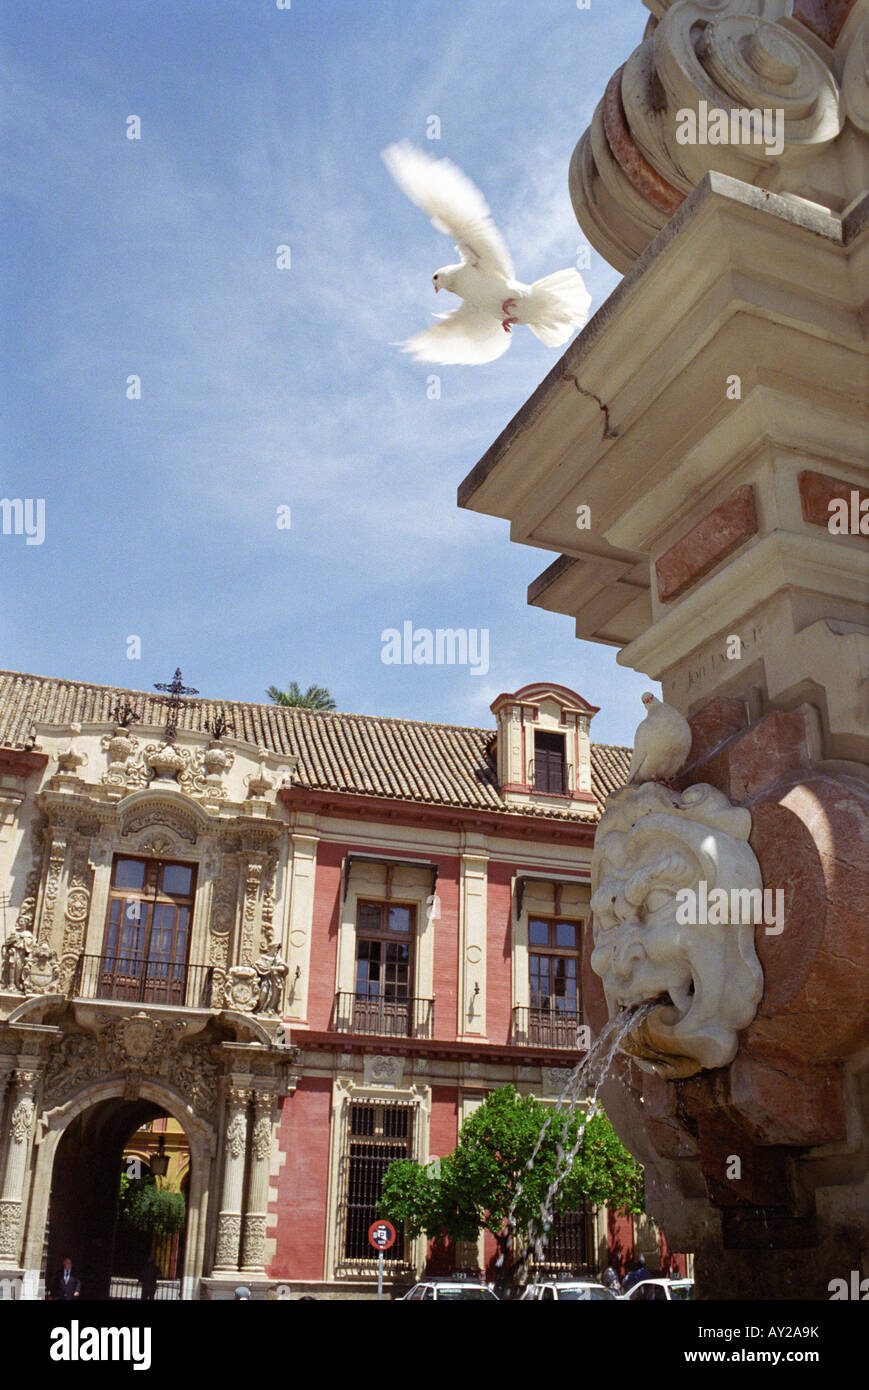 Una paloma levanta el vuelo en la plaza central de Sevilla, España. Foto de stock